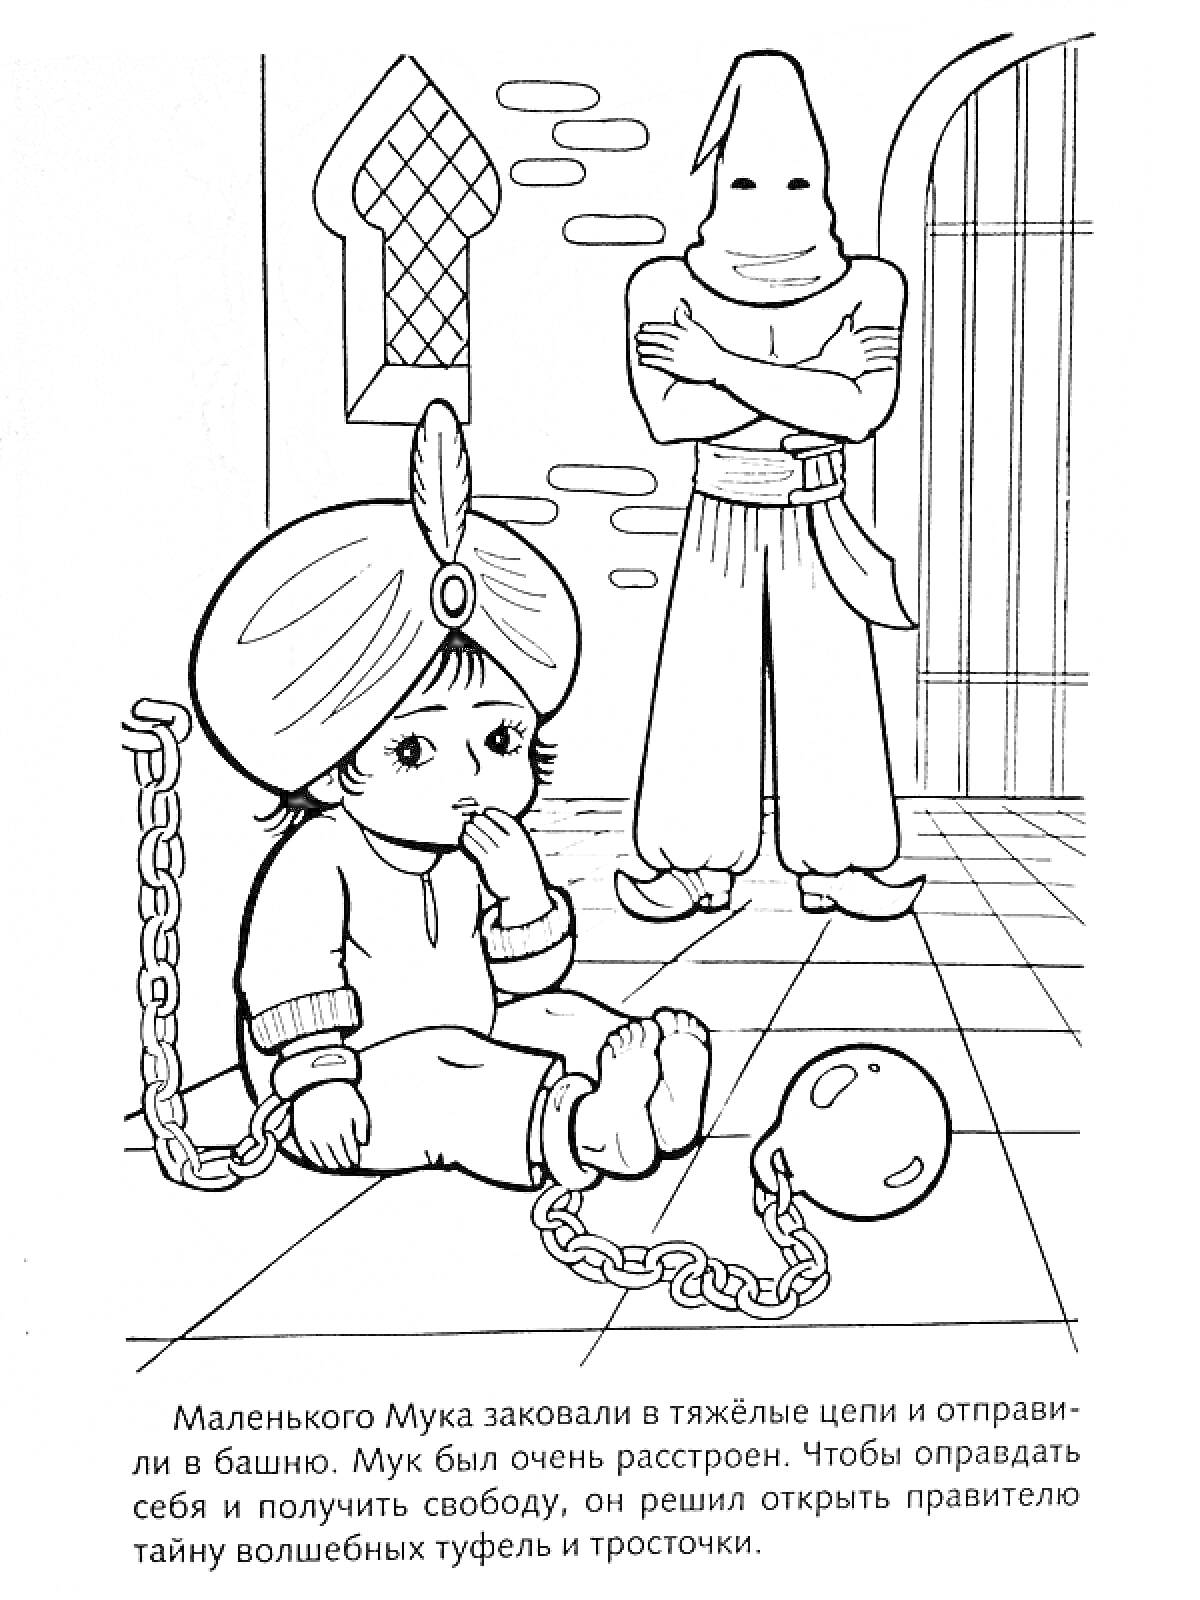 Раскраска Маленький Мук, закованный в цепи, в башне с надзирателем в капюшоне